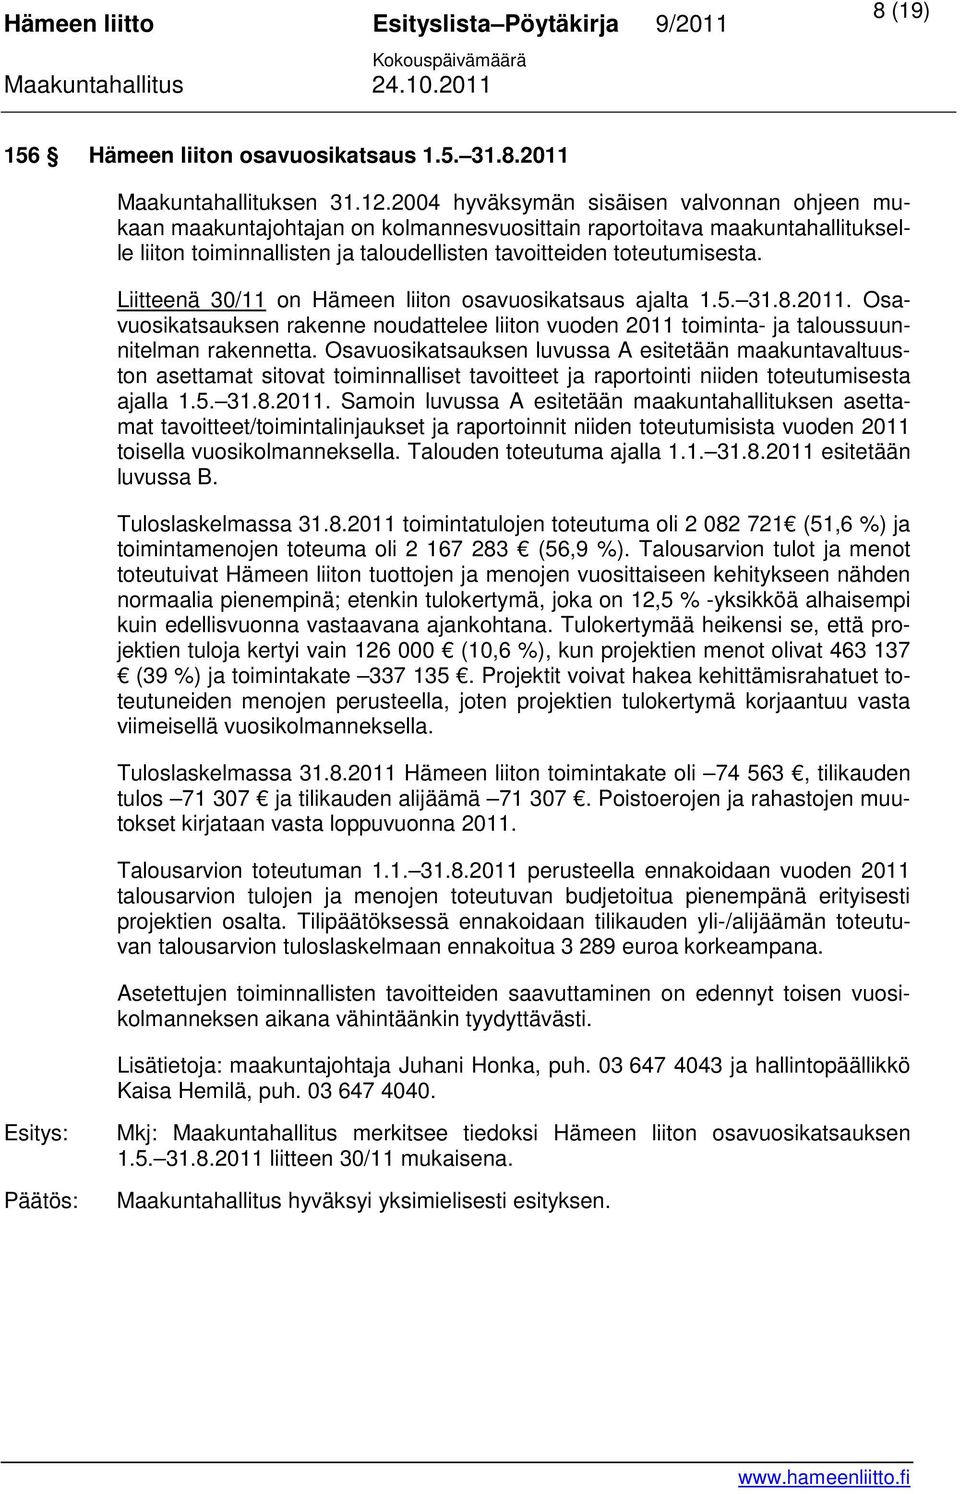 Liitteenä 30/11 on Hämeen liiton osavuosikatsaus ajalta 1.5. 31.8.2011. Osavuosikatsauksen rakenne noudattelee liiton vuoden 2011 toiminta- ja taloussuunnitelman rakennetta.